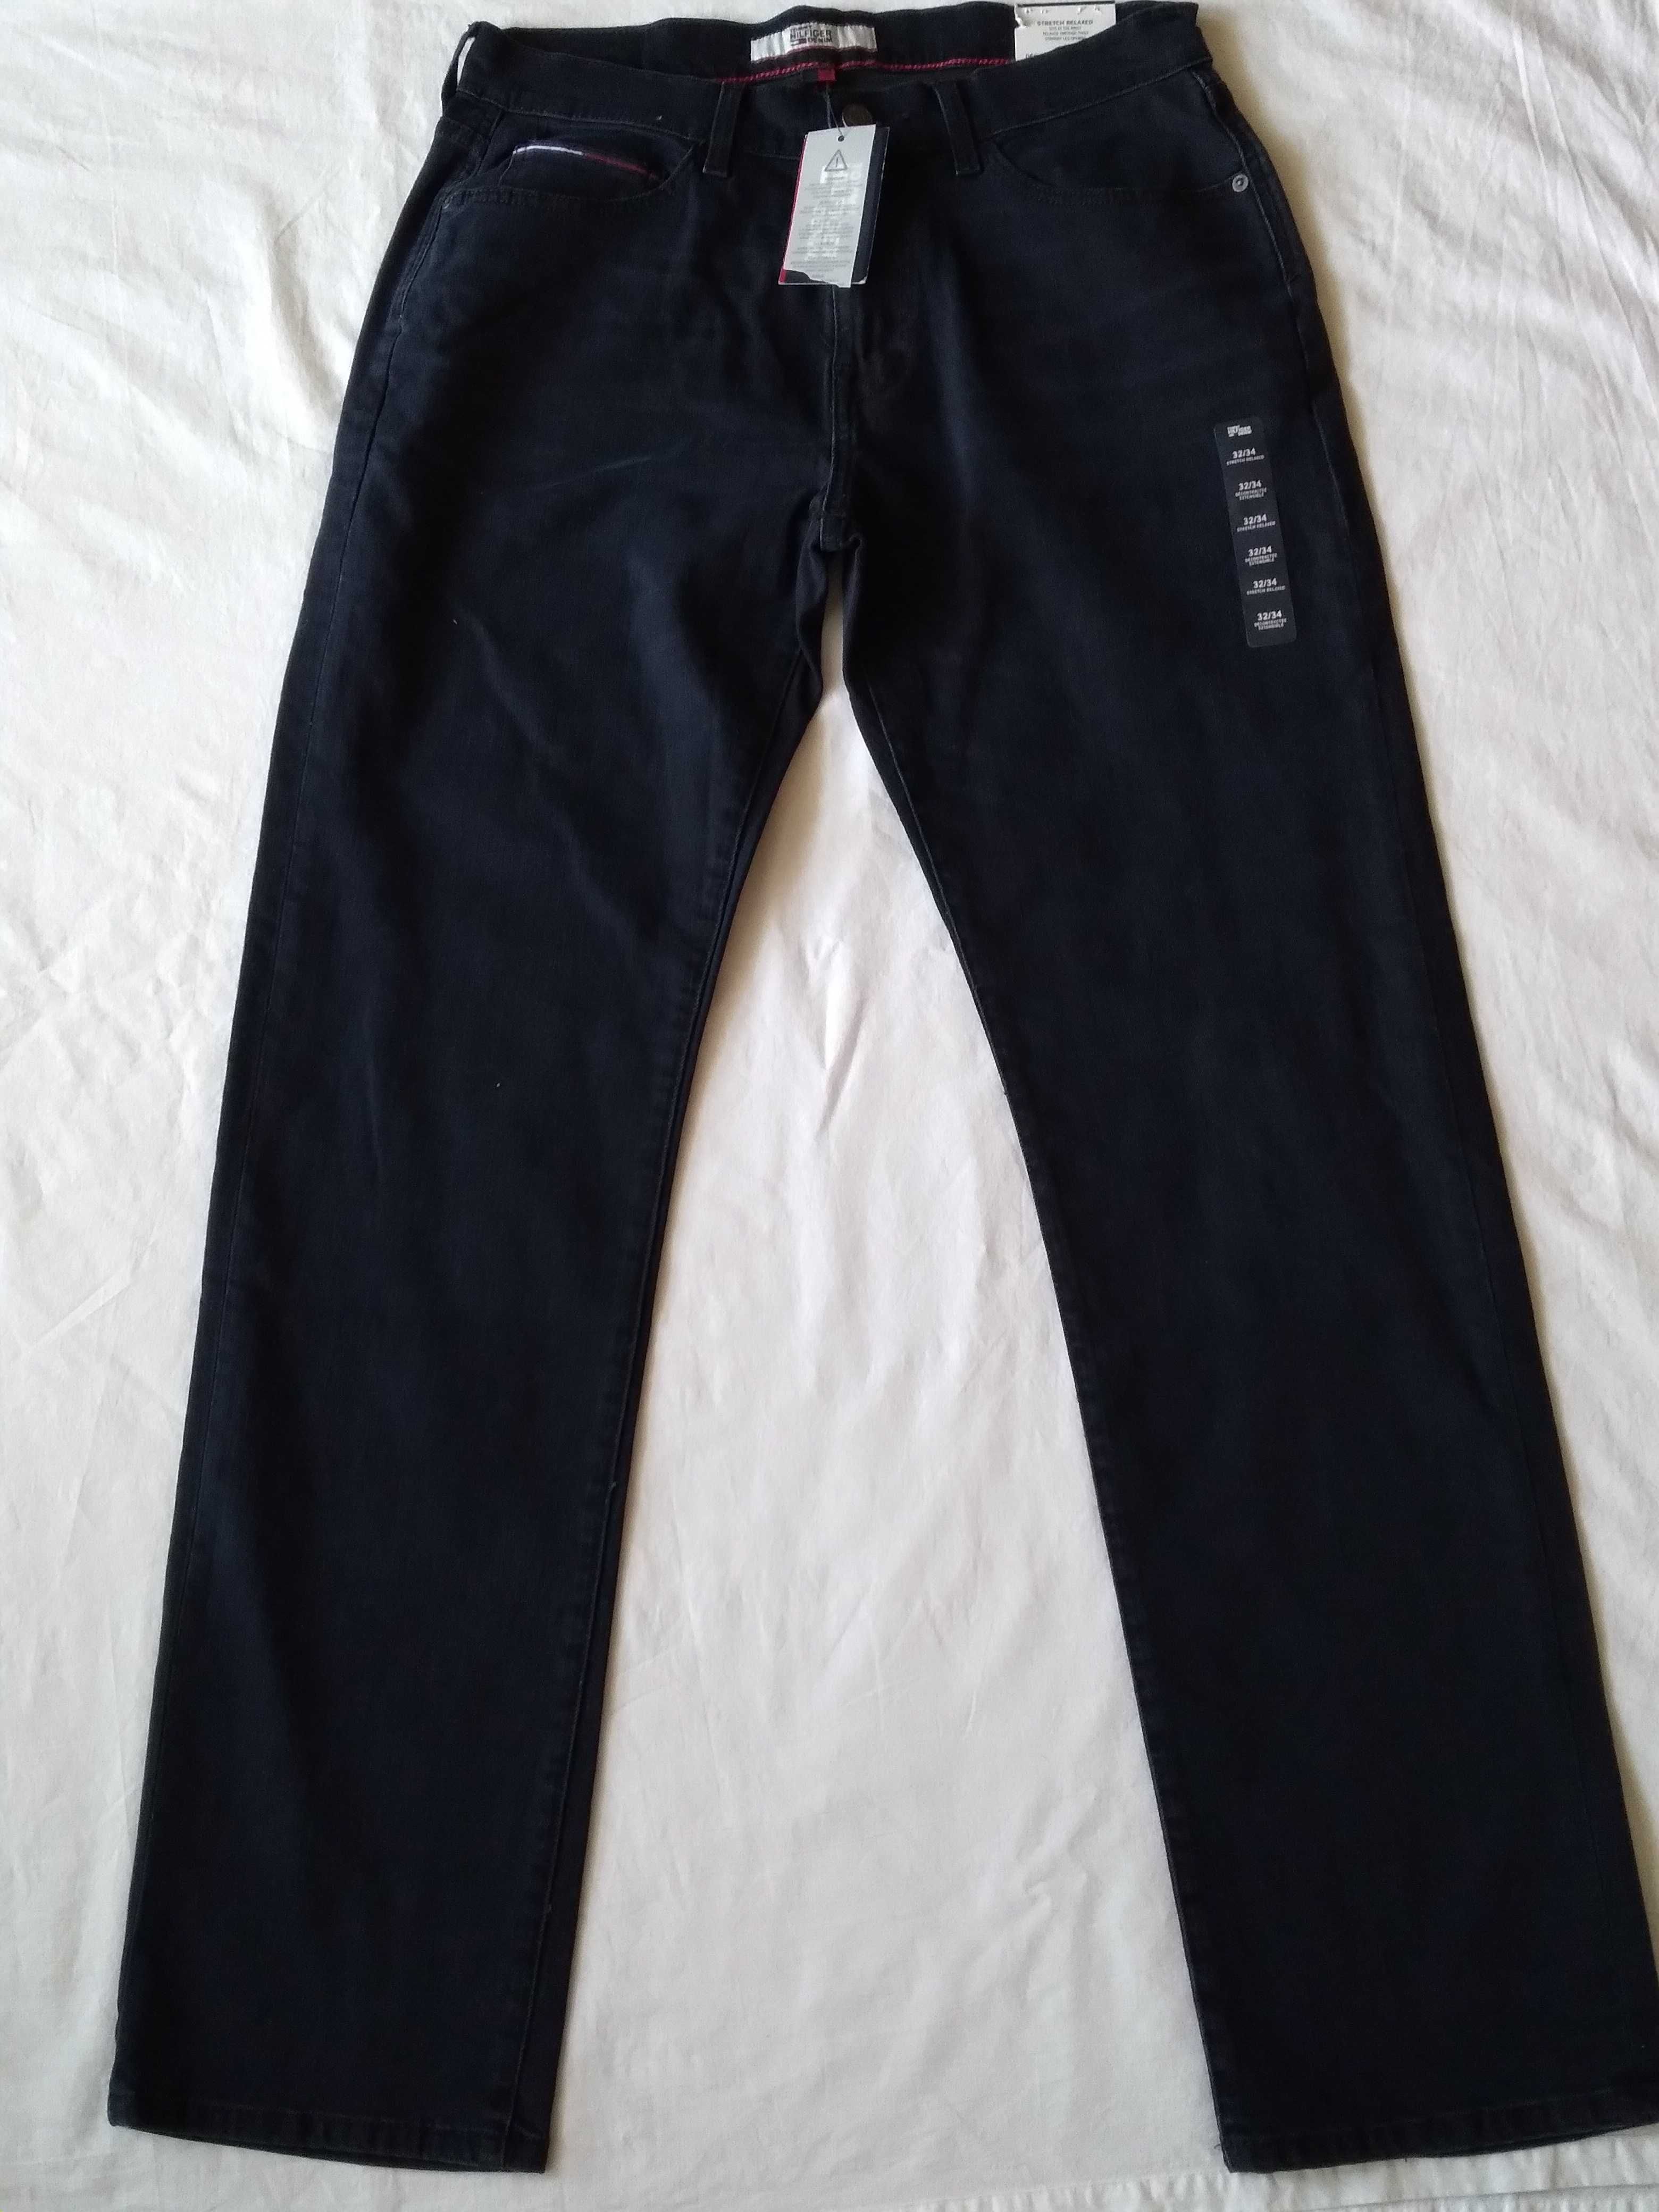 Spodnie jeans męskie Tommy Hilfiger W 32 L 34